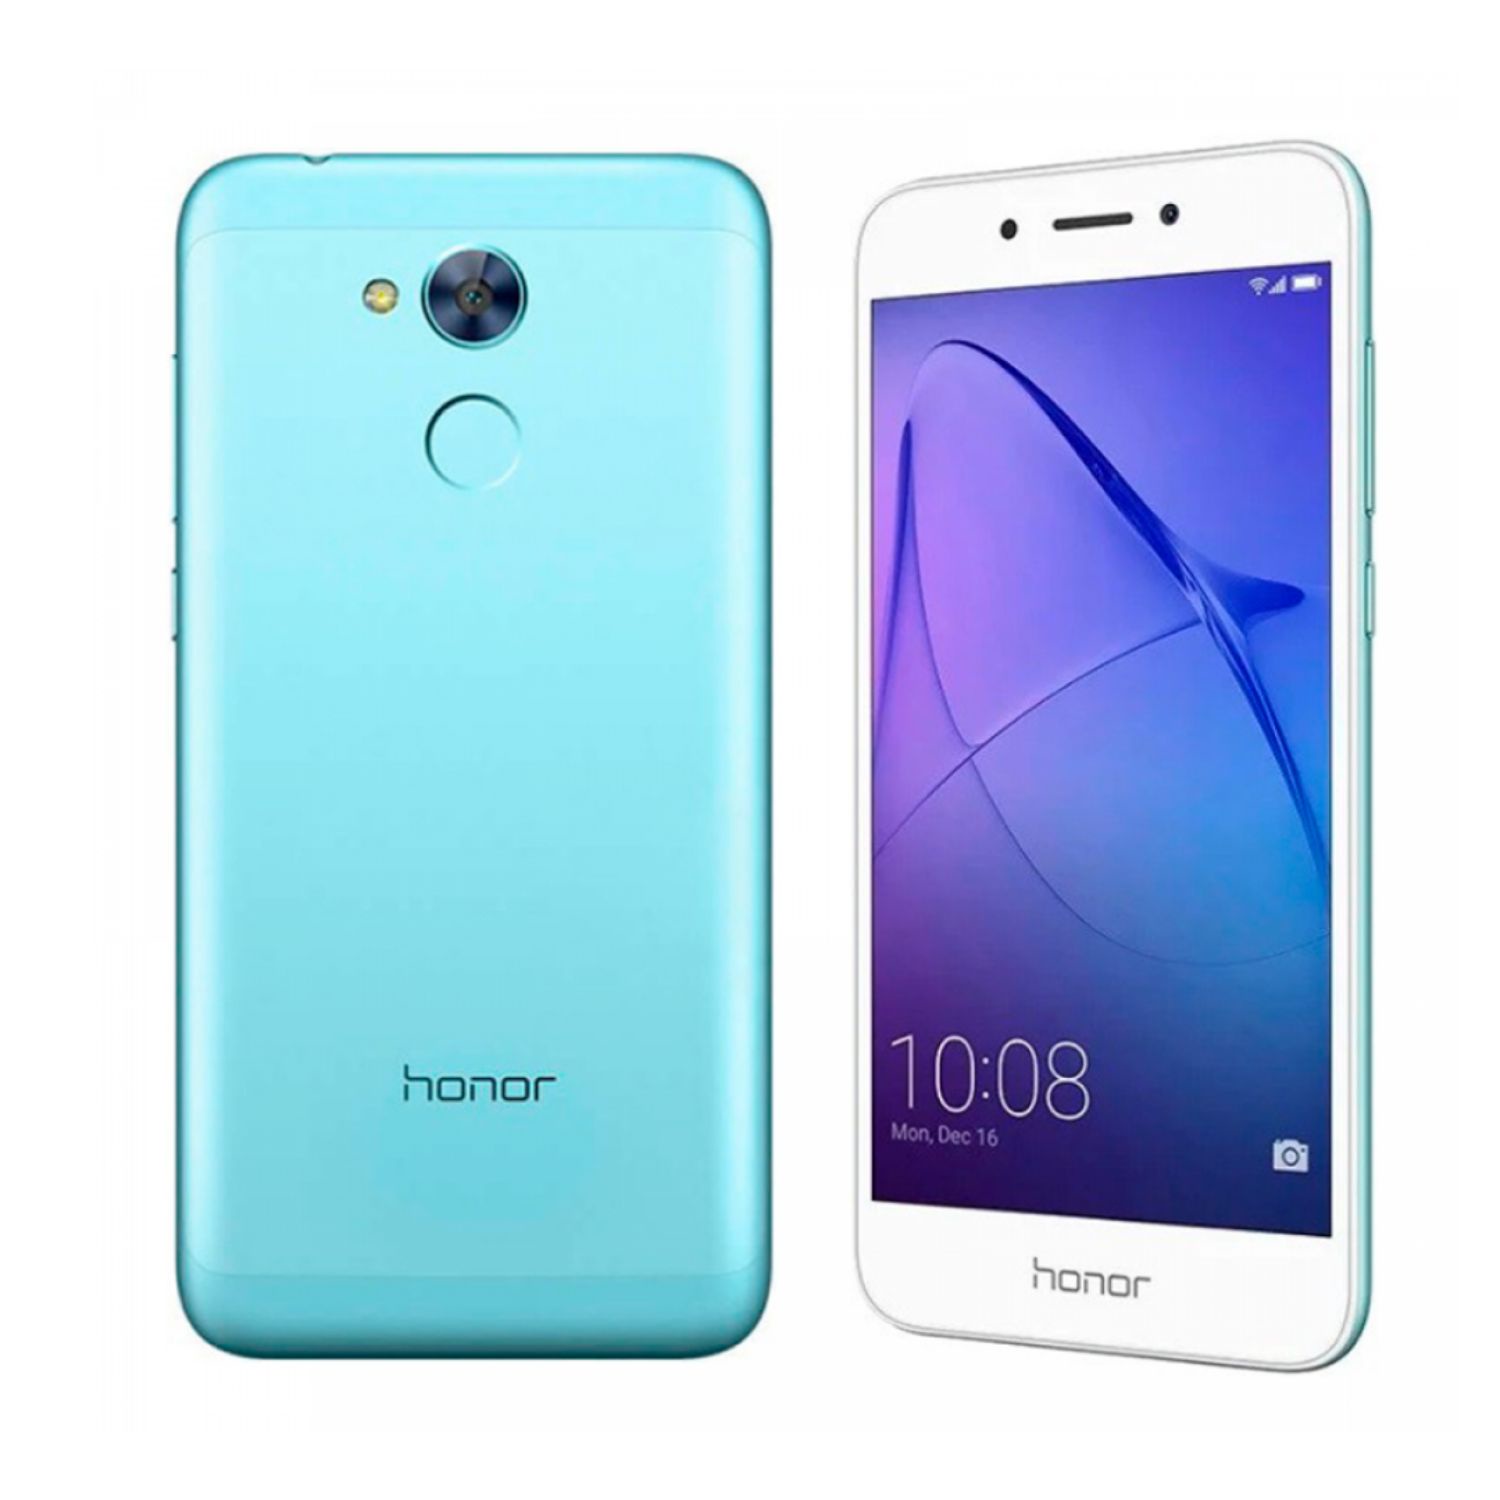 Honor 6 16. Huawei Honor 6a 16 GB. Хонор 6. Смартфон Honor 6. Хуавей хонор 6 смартфон.